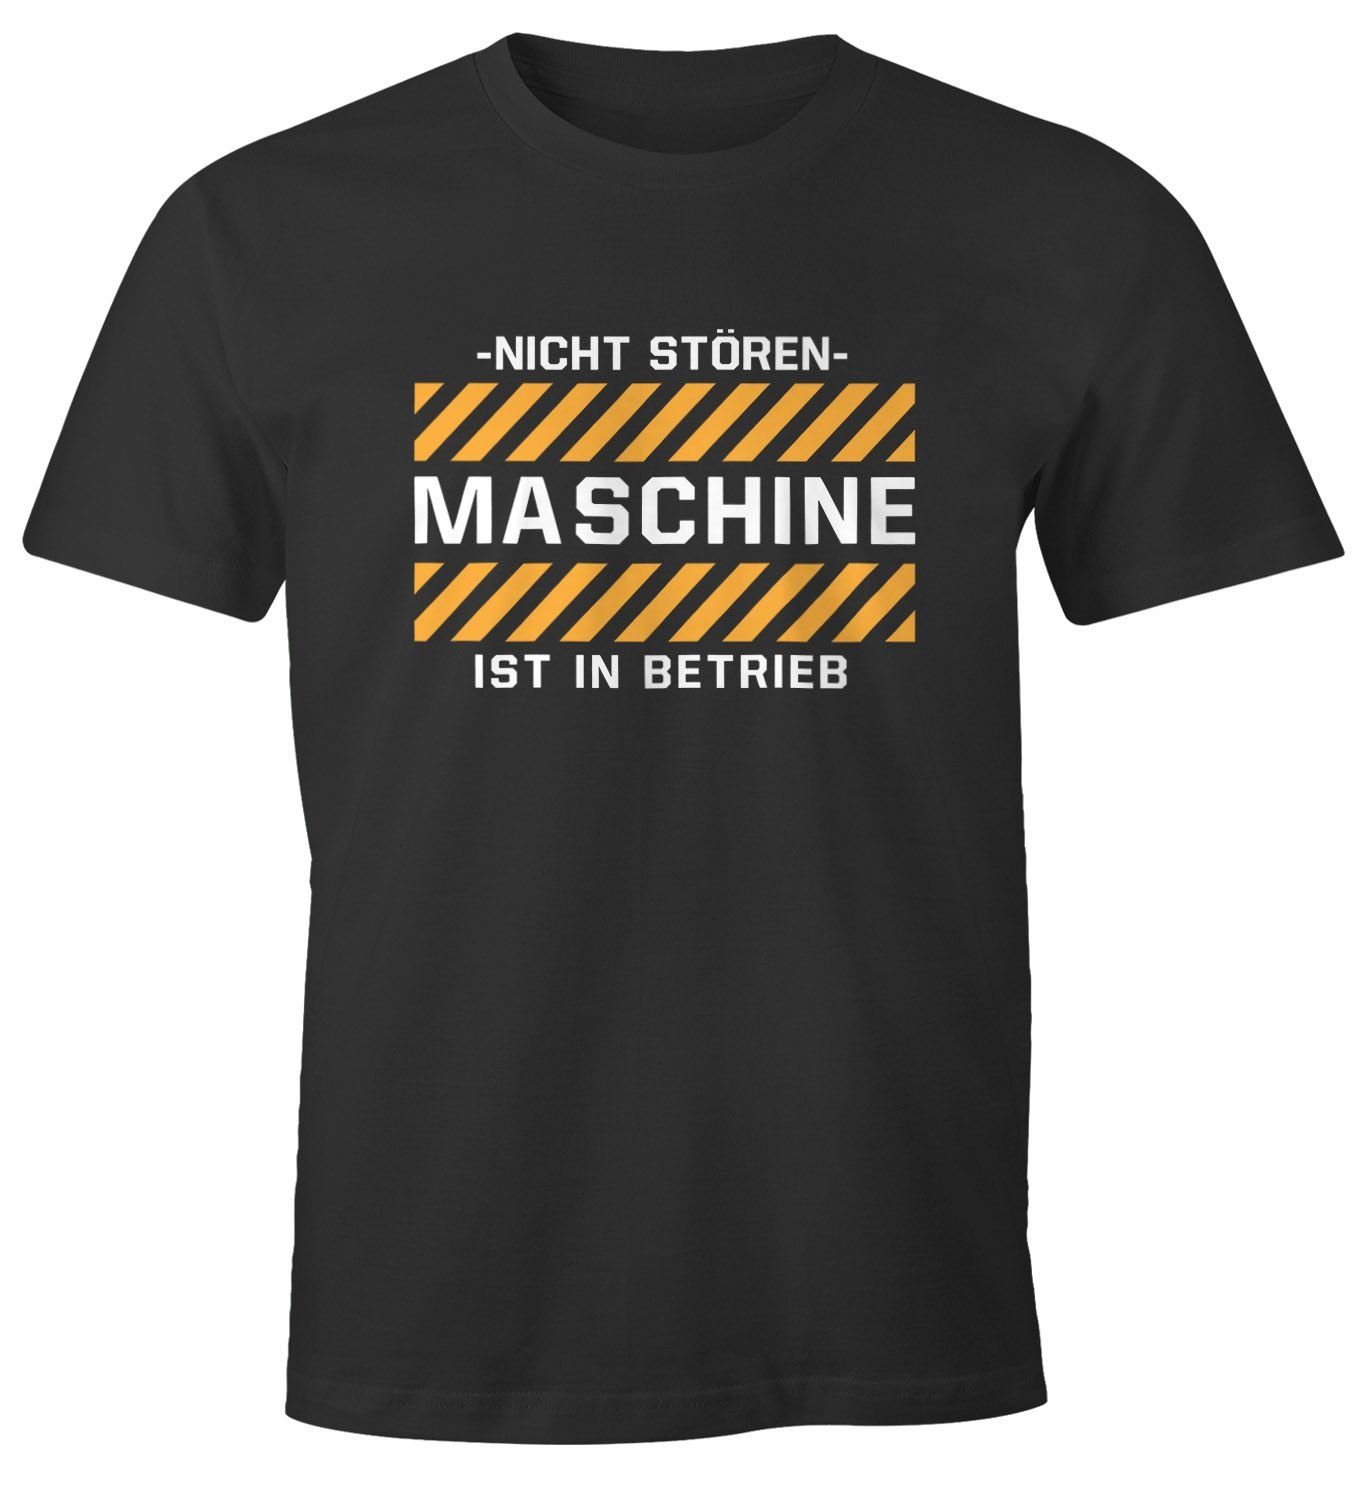 MoonWorks Print-Shirt Herren T-Shirt -Nicht stören- Maschine ist in Betrieb lustiges Spruch Fun-Shirt Moonworks® mit Print